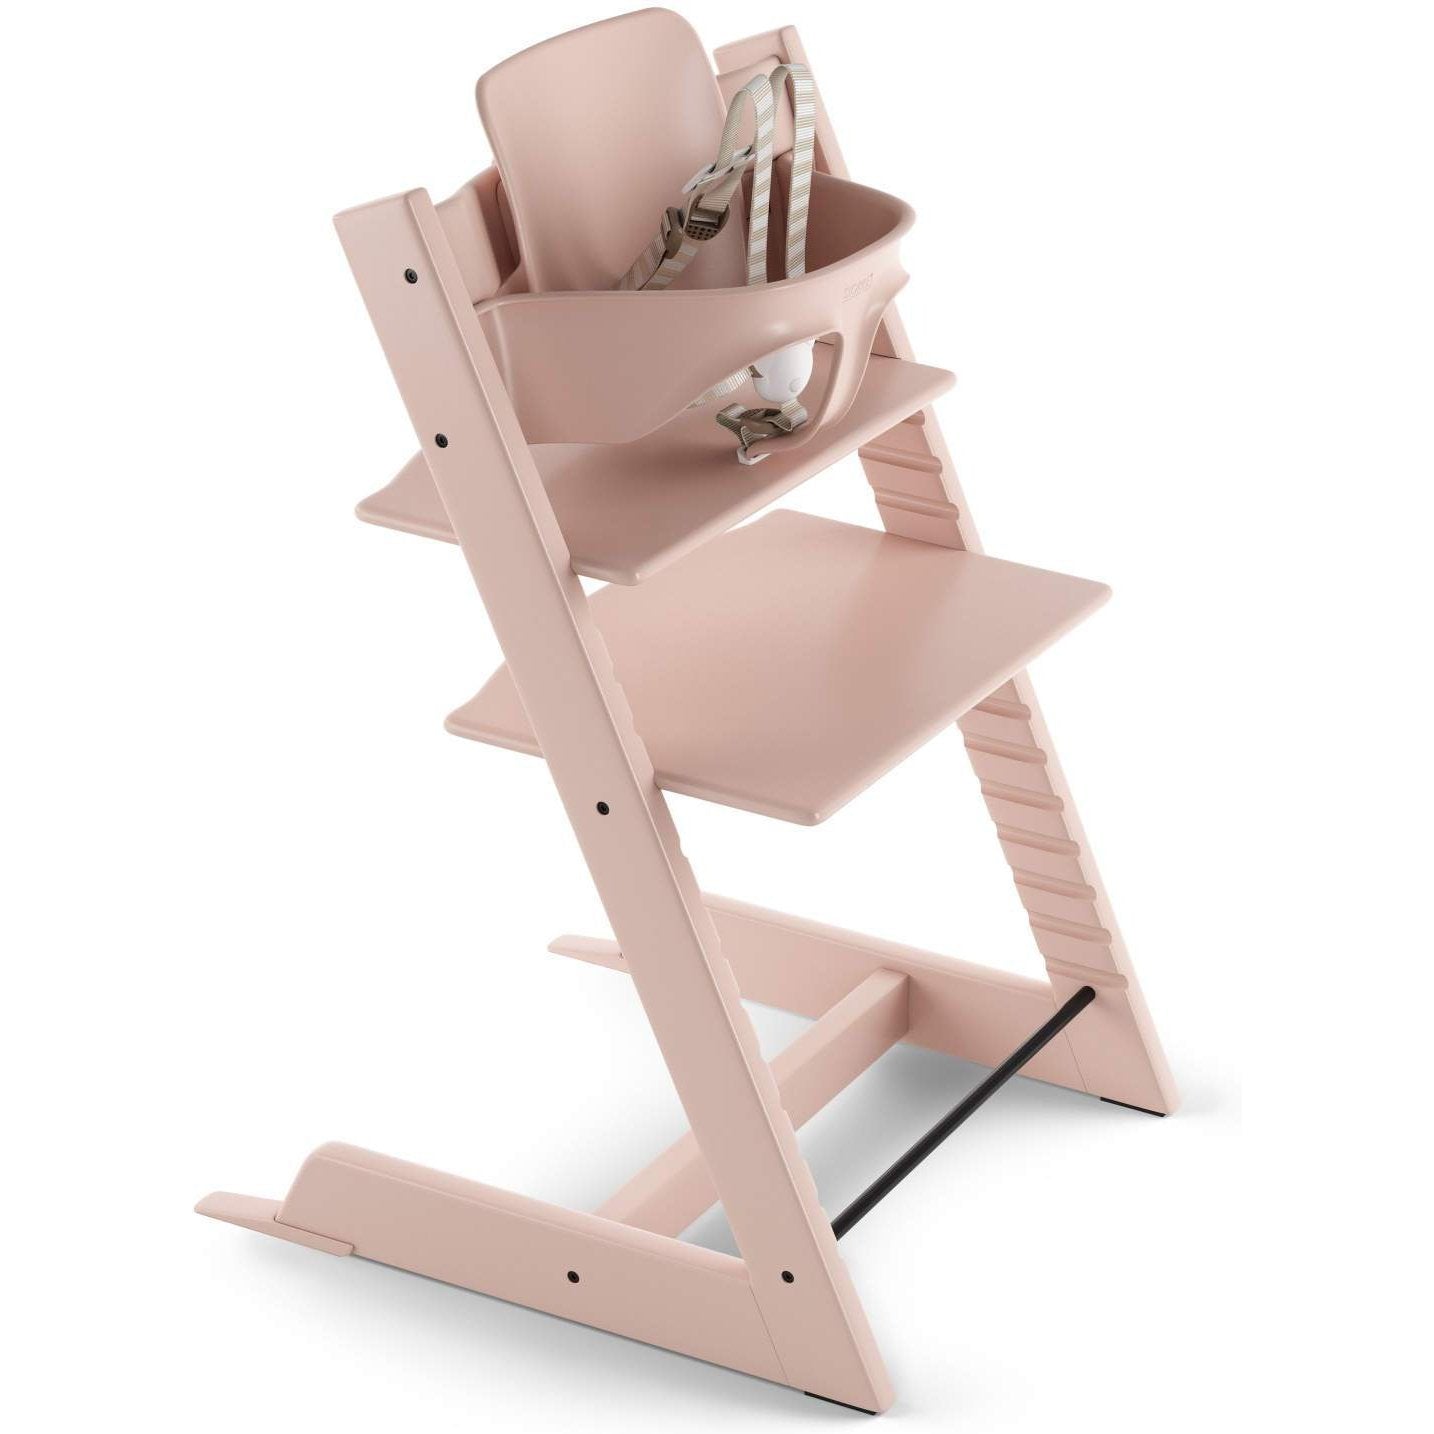 Stokke Tripp Trapp High Chair | Twinkle Twinkle Little One